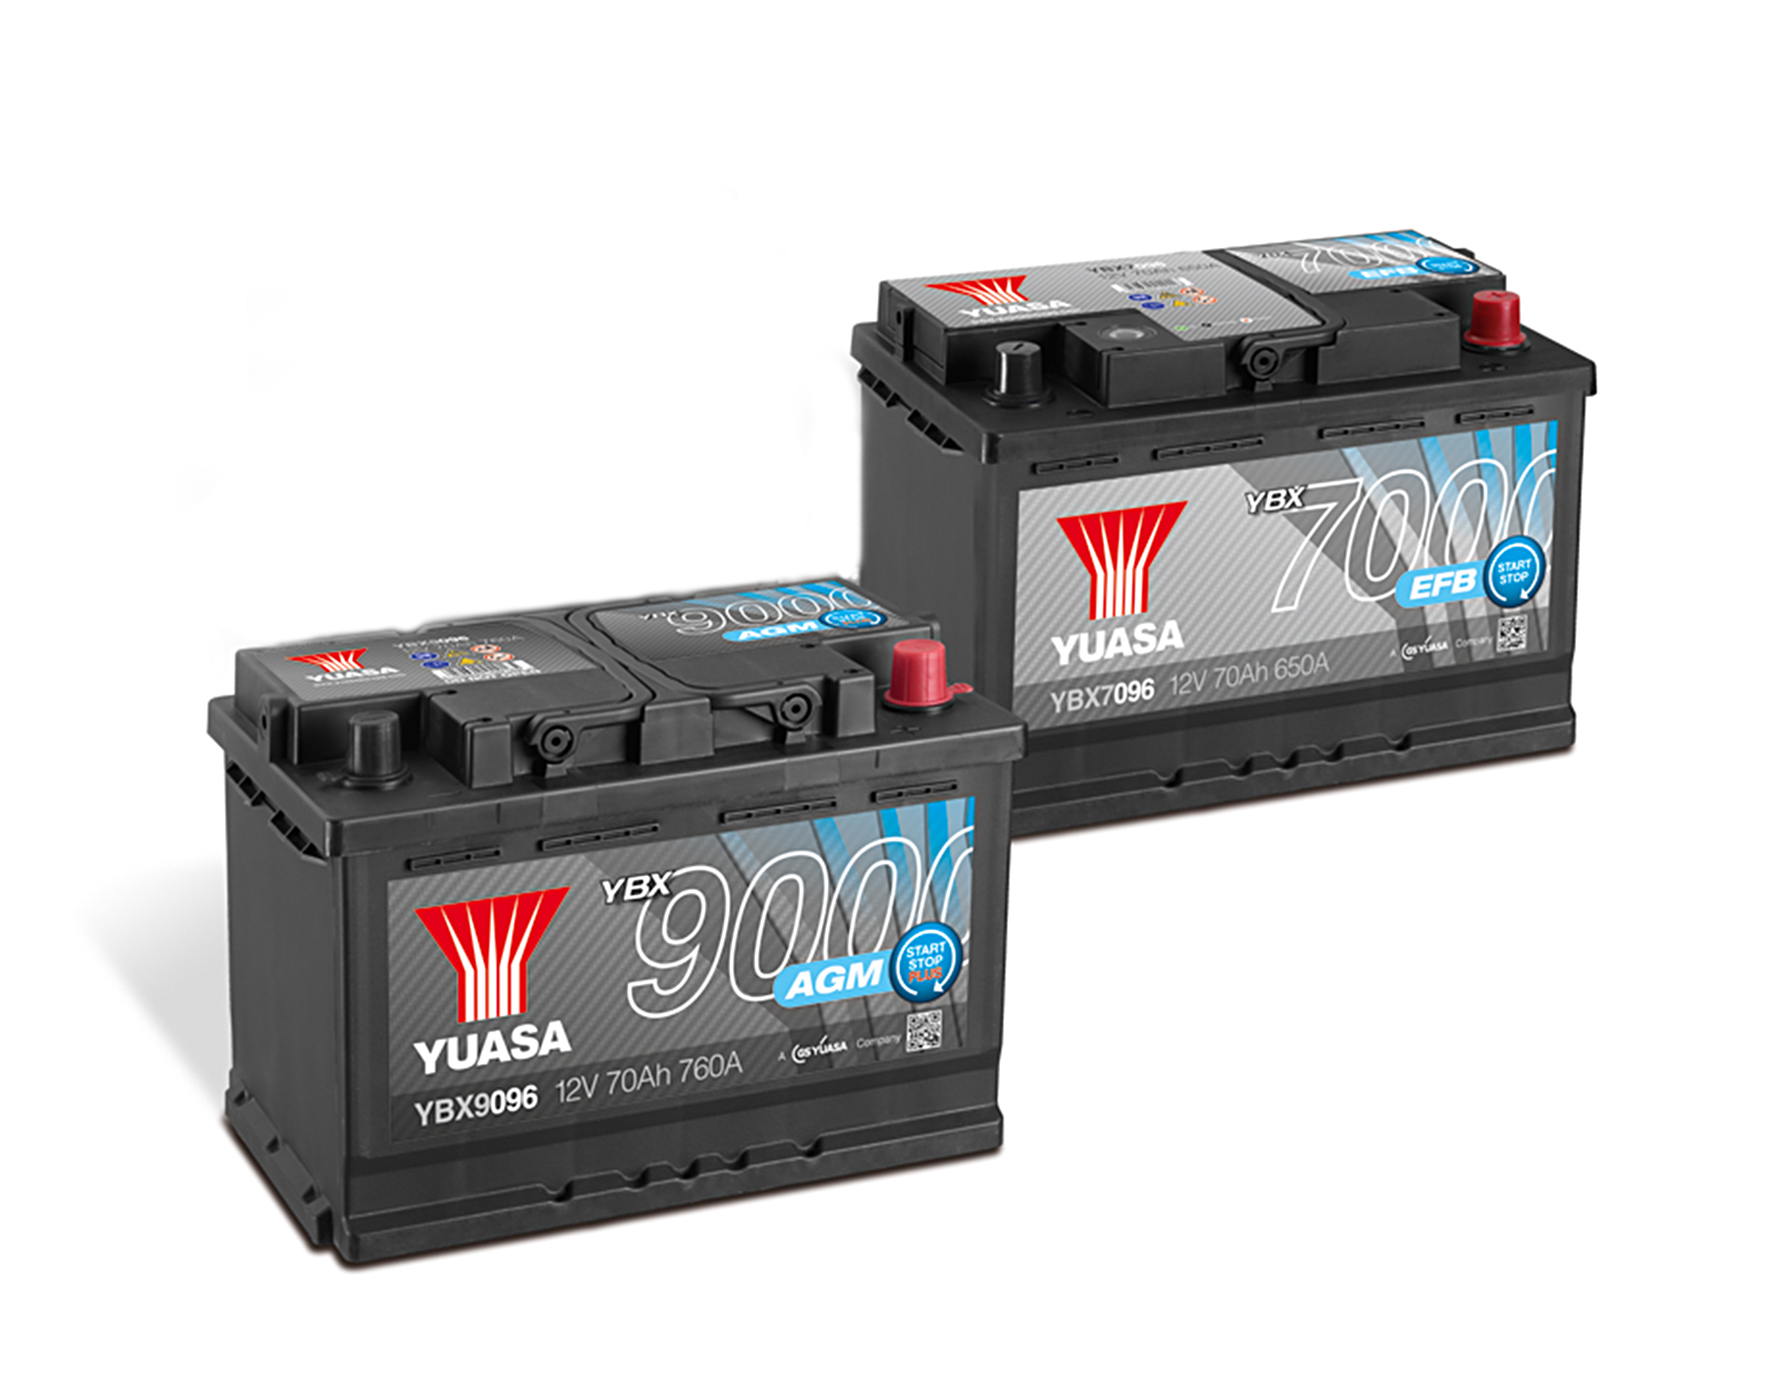 AGM-Batterie (Serie 9000) und EFB-Batterie (Serie 7000) aus der YBX-Baureihe von GS YUASA.